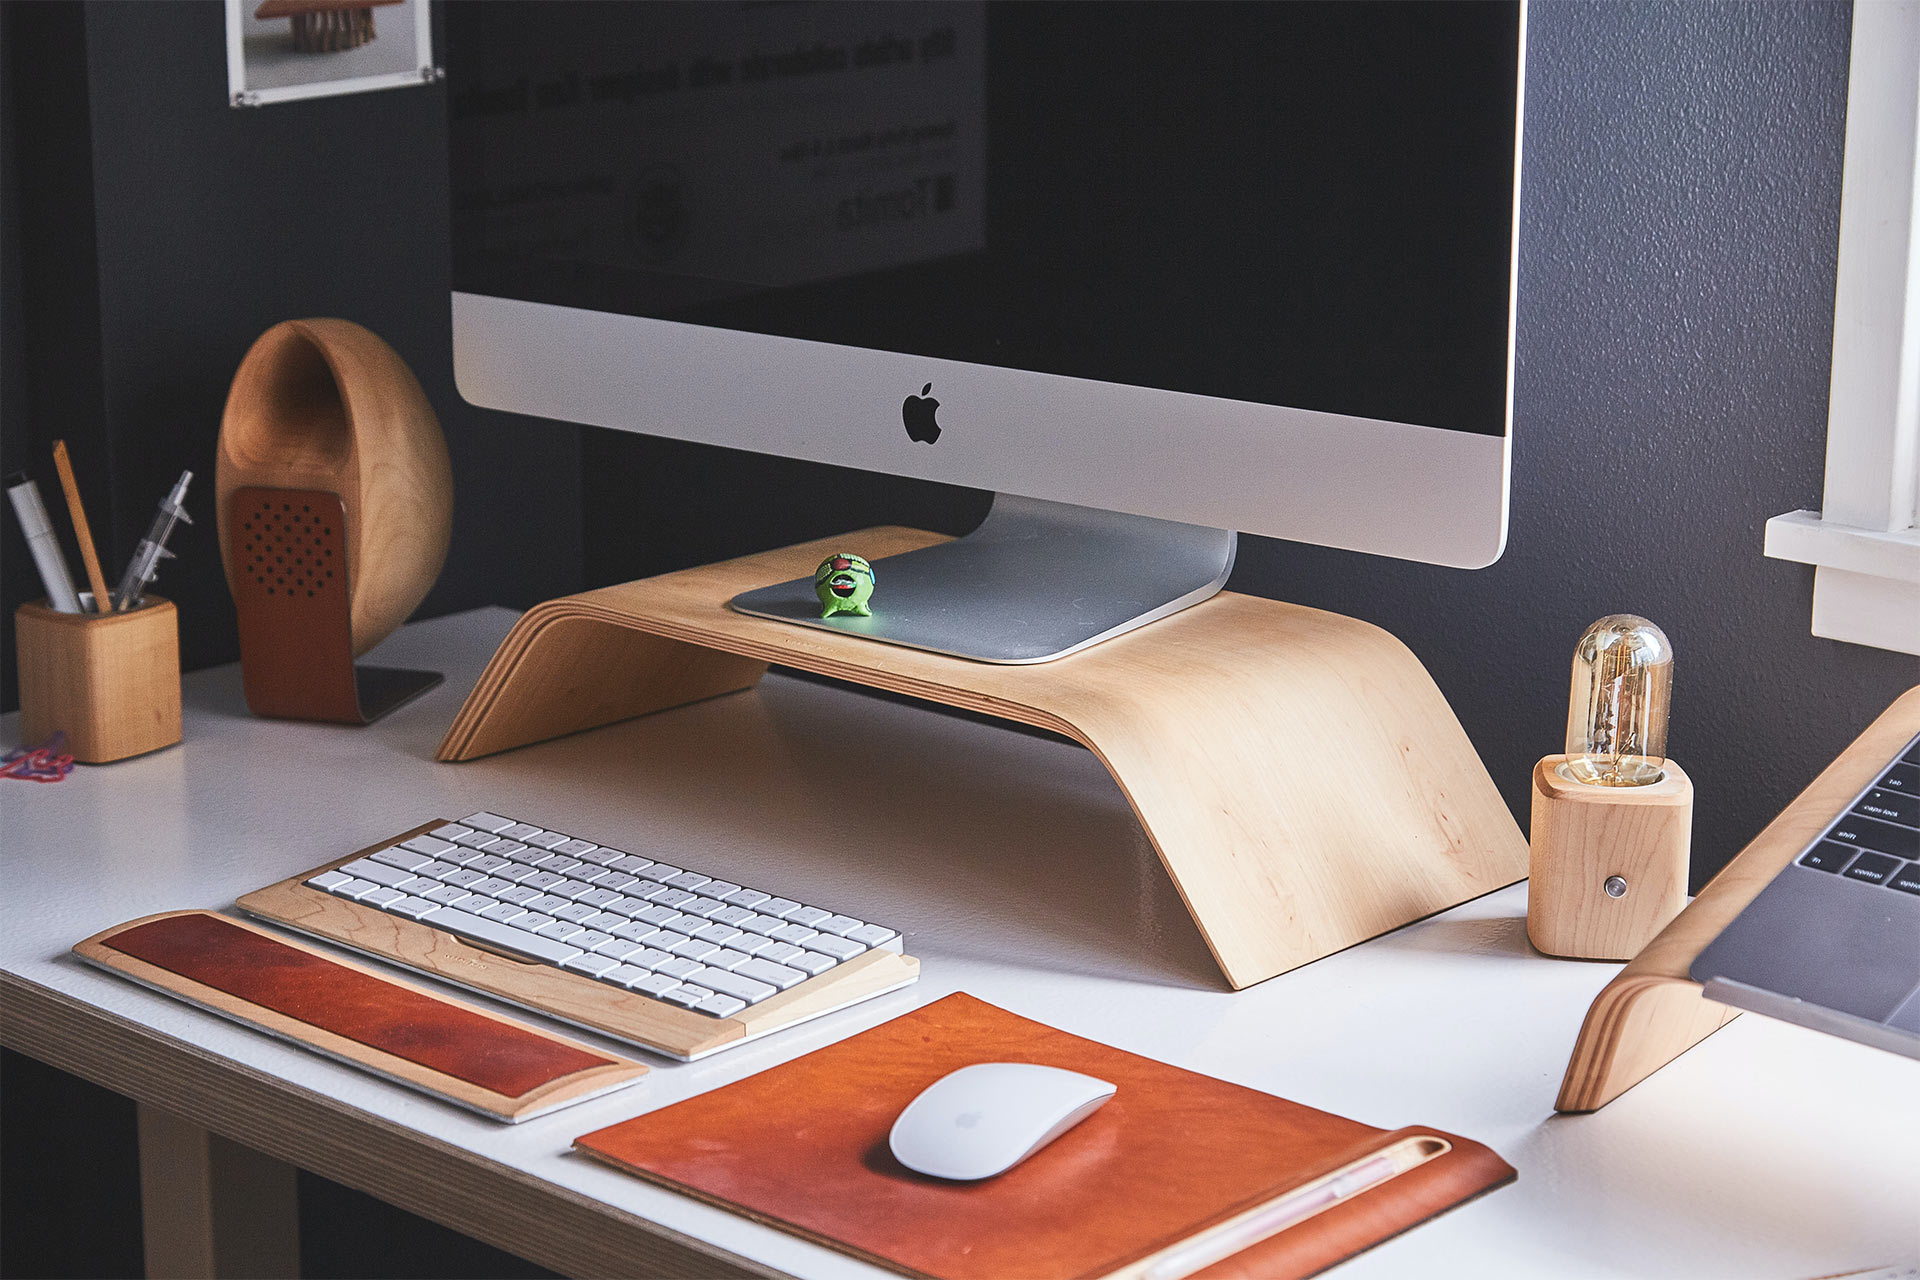 Sebuah iMac pada dudukan kayu di atas meja dengan keyboard dan mouse nirkabel.